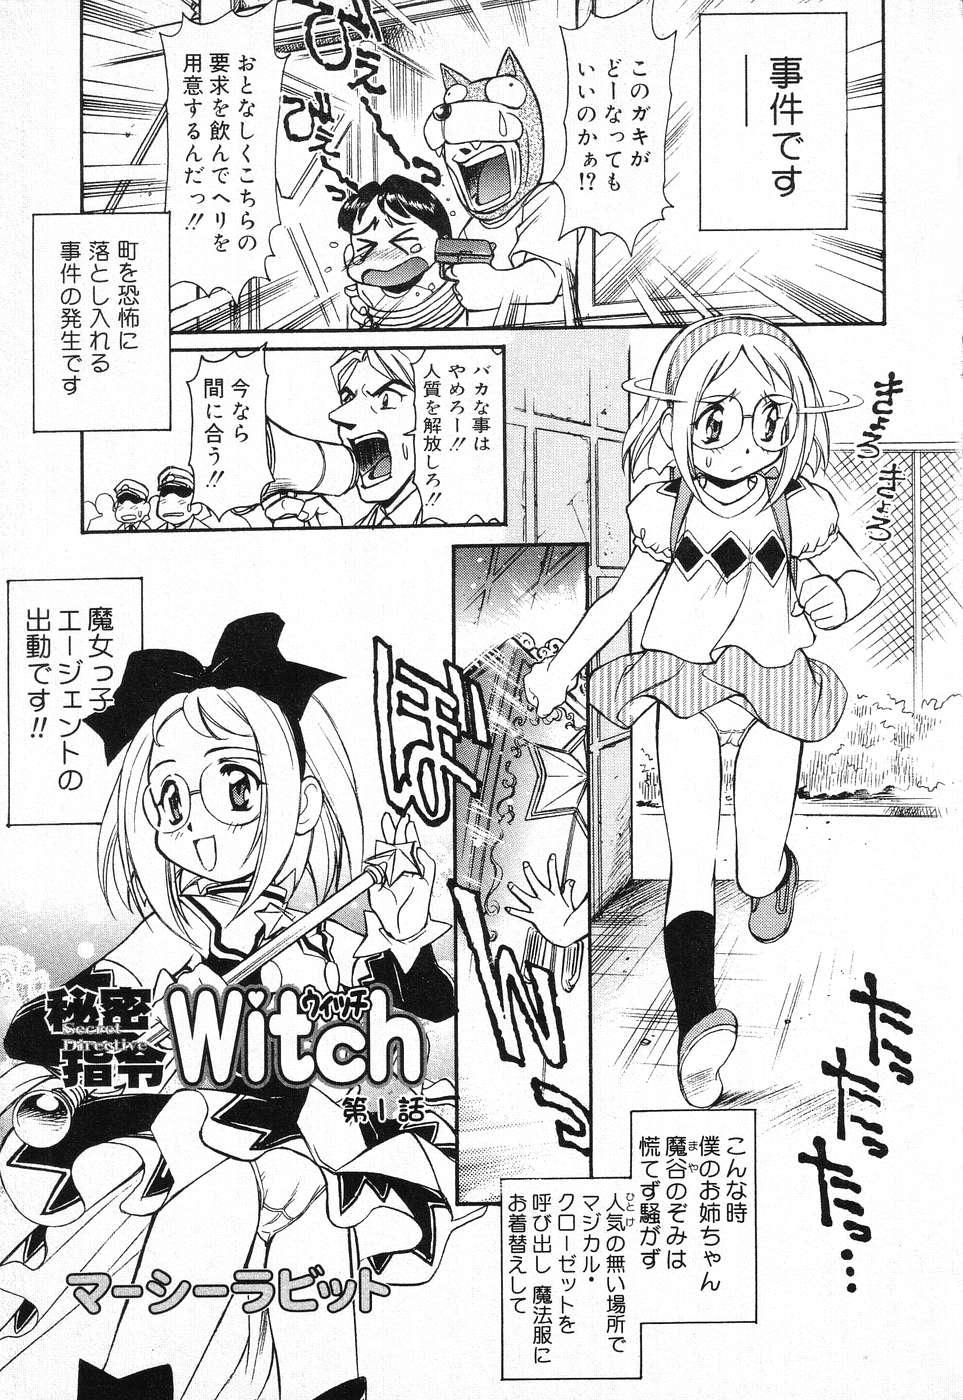 X Mitsu Shirei Witch 1-9 0